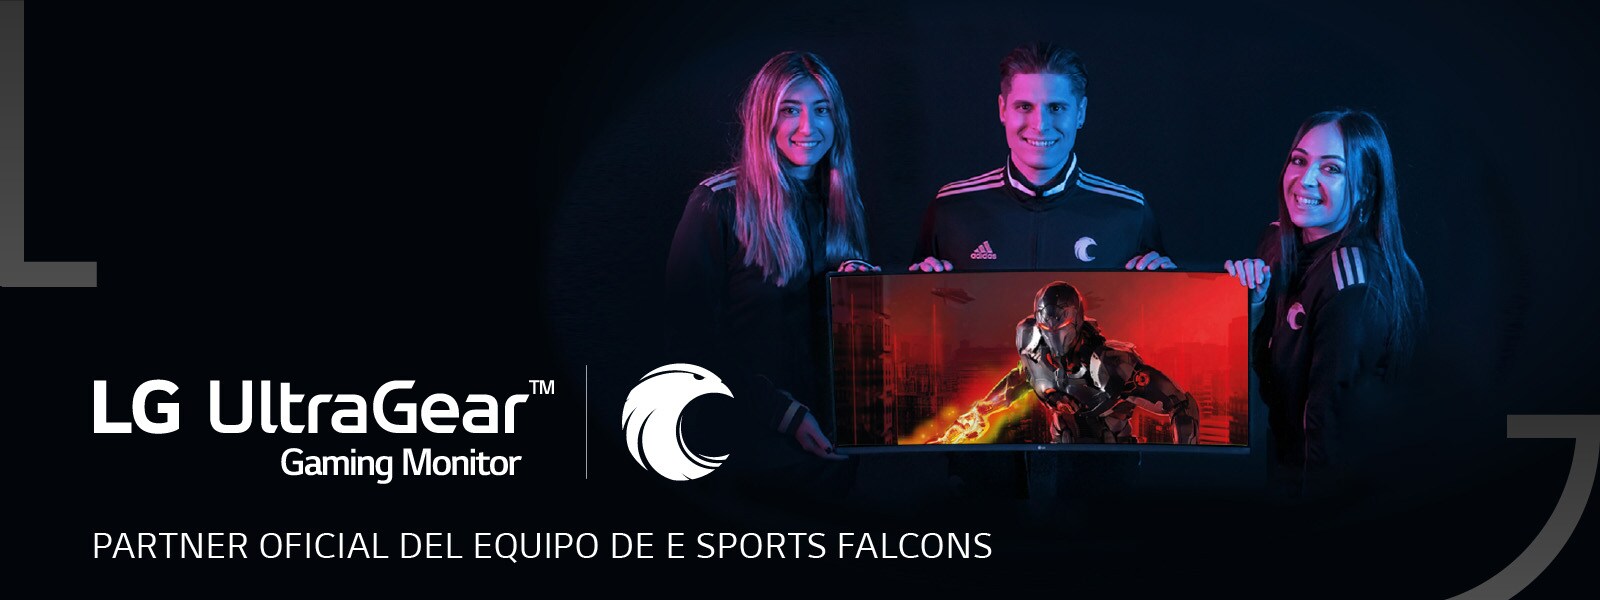 LG UltraGear Gaming Monitor partner oficial del equipo de E Sports Falcons